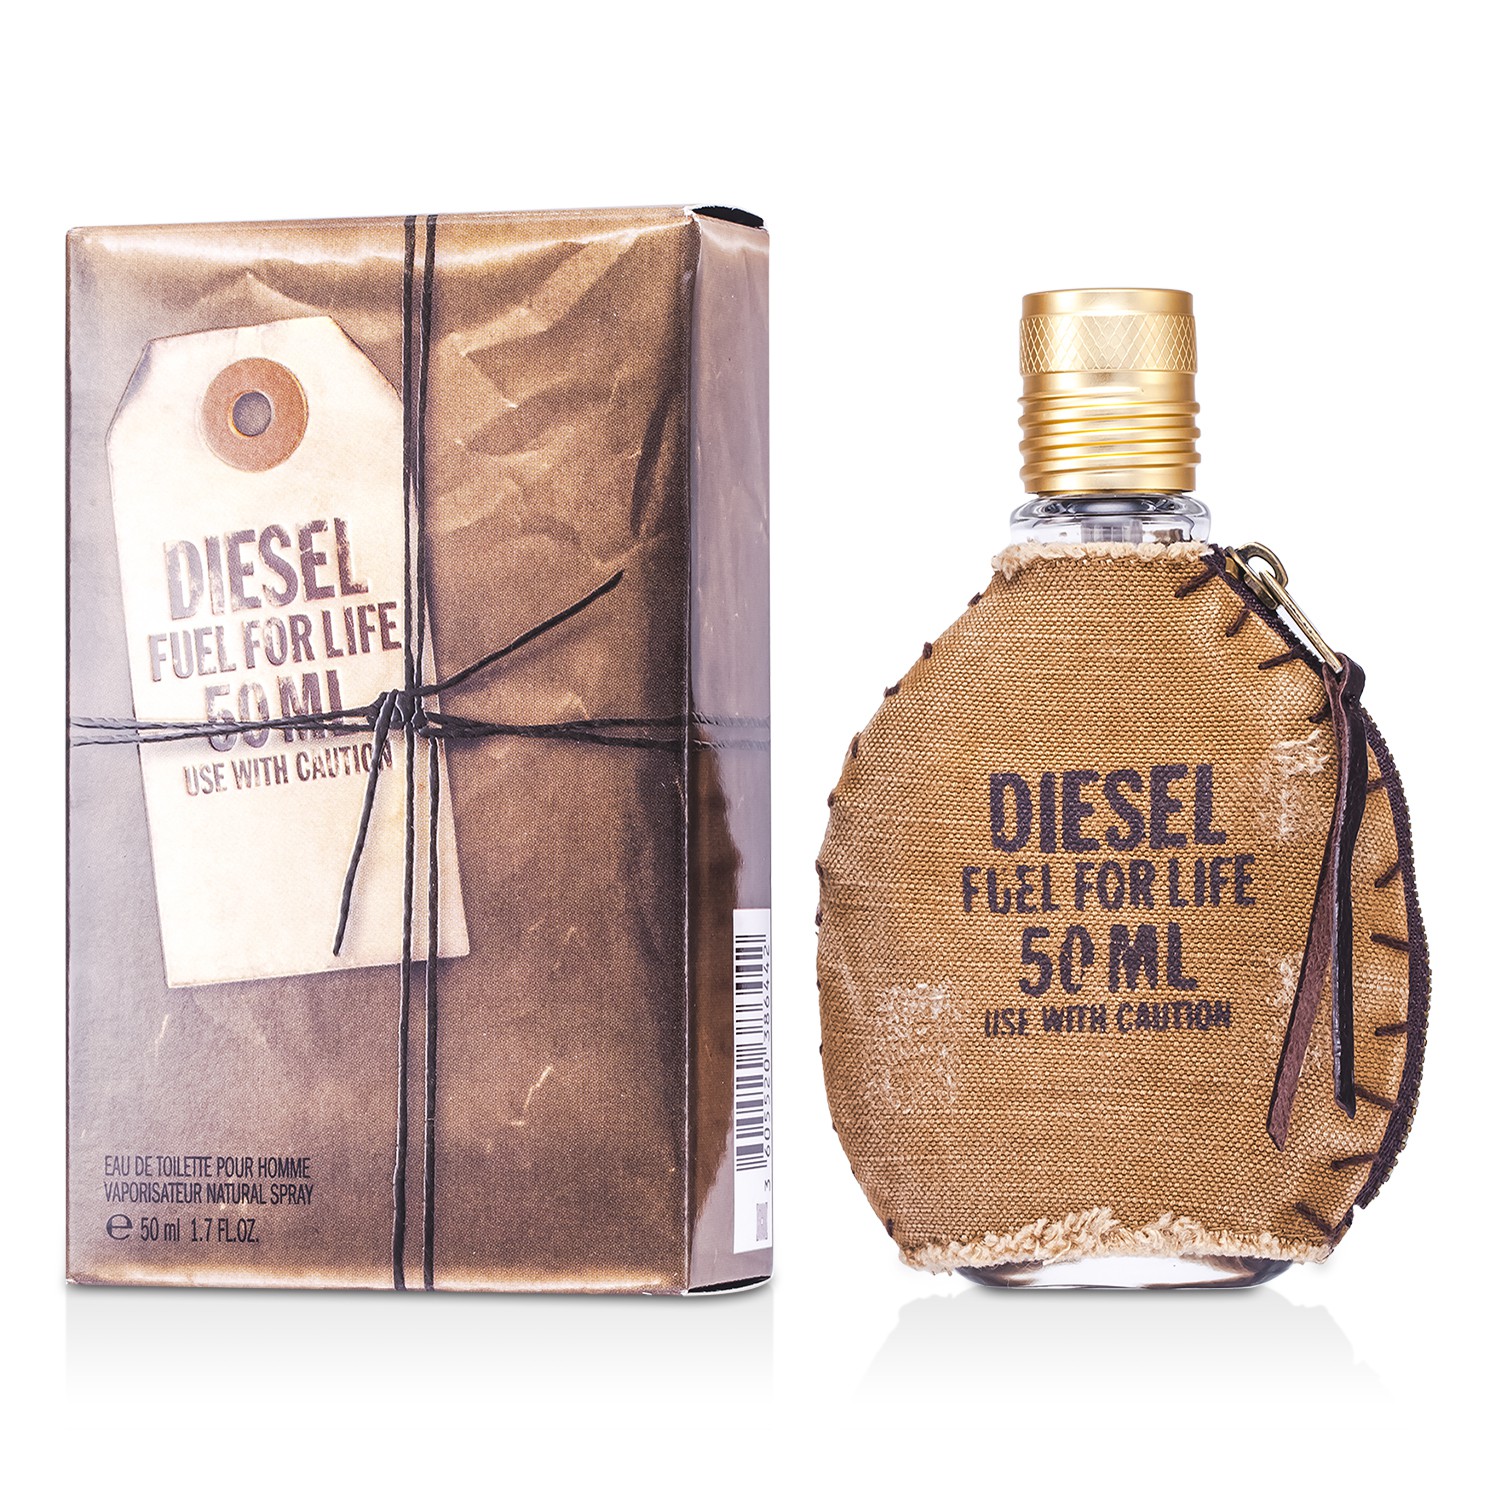 Воду дизель. Духи Diesel fuel for Life мужские. Туалетная вода Diesel fuel for Life 125мл. Diesel Perfume - “fuel for Life”. (Туалетная вода Diesel “топливо для жизни”.). Diesel fuel for Life муж 50 мл.